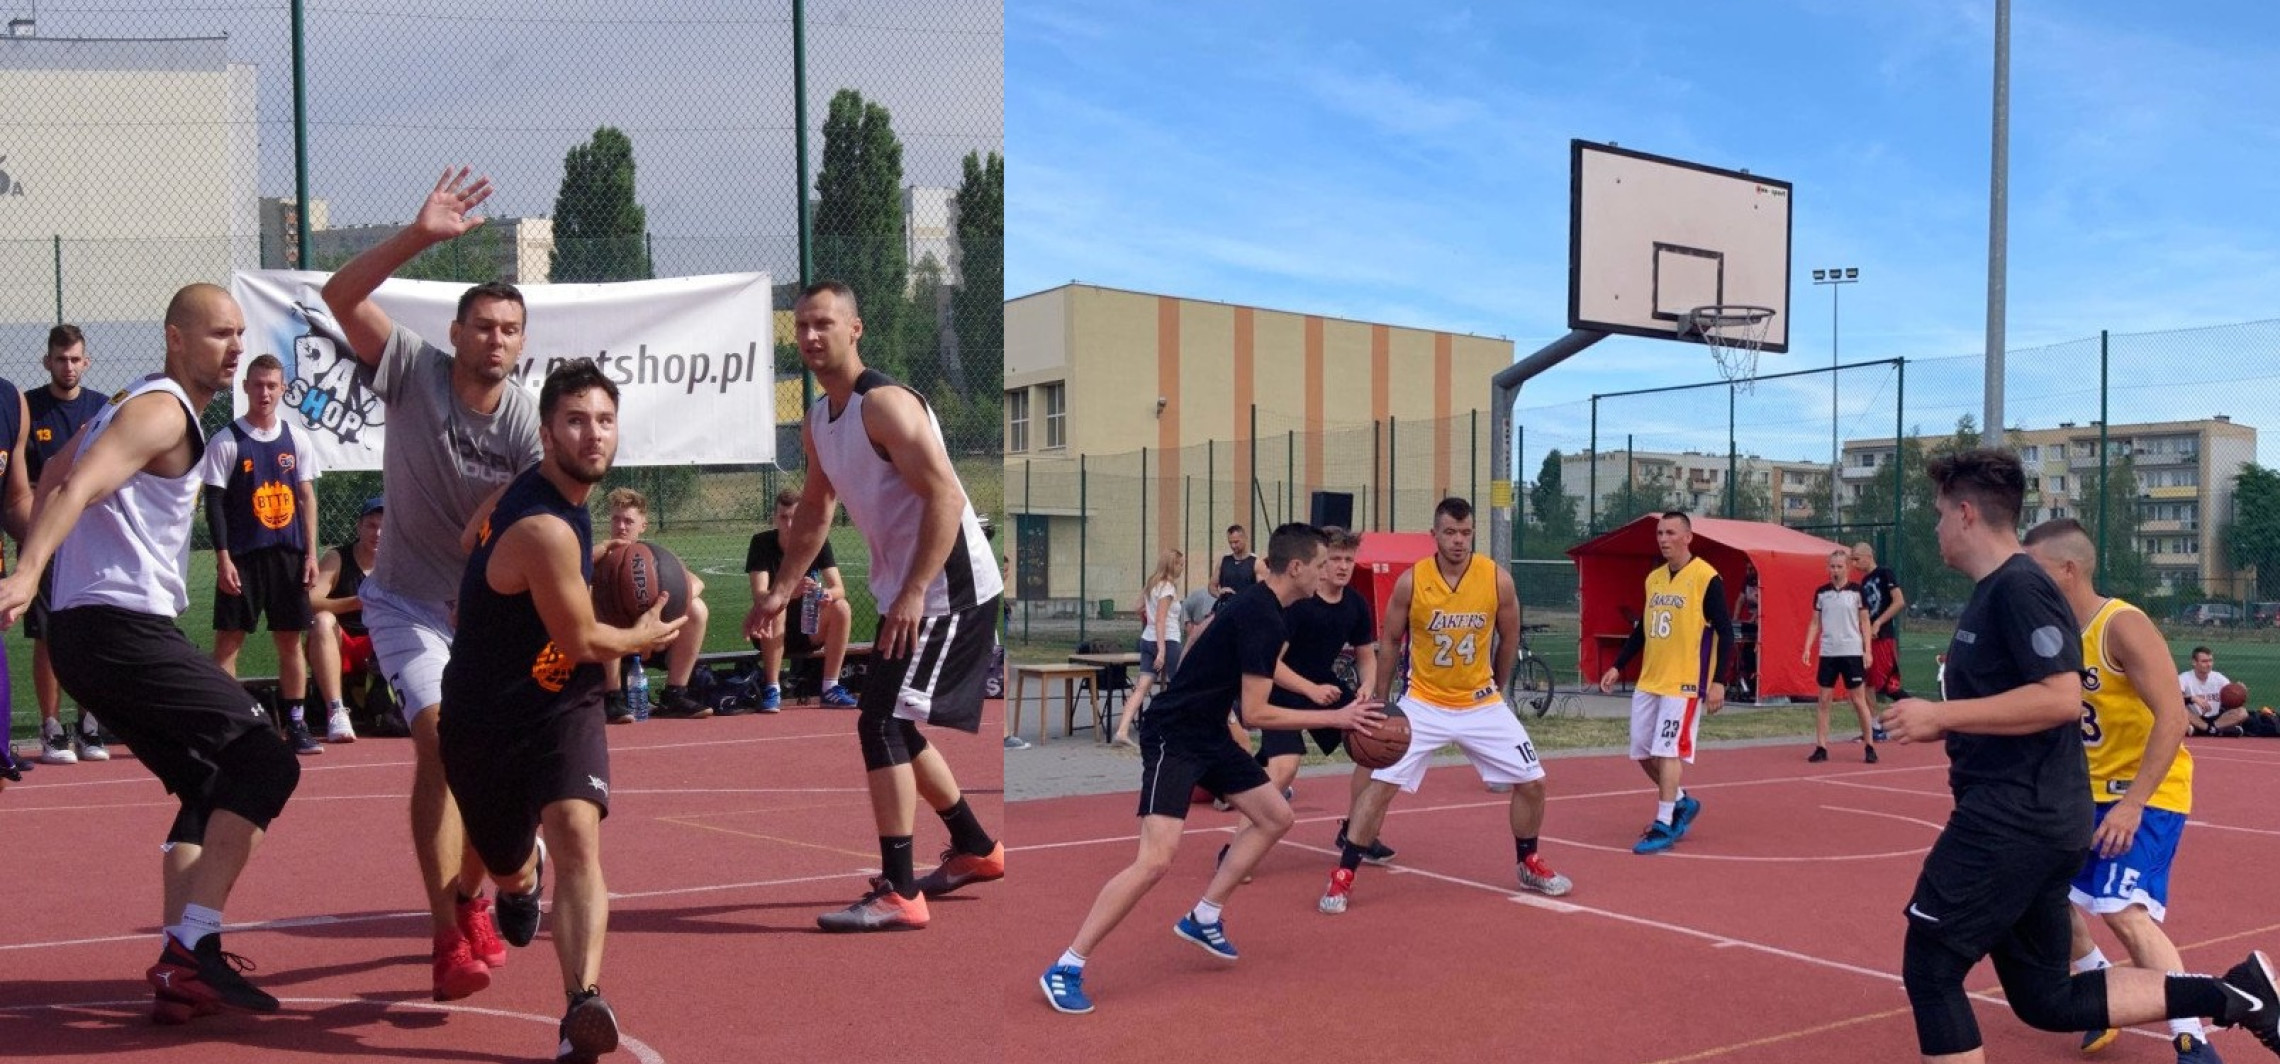 Inowrocław - Streetball 2019. Trwa święto koszykówki ulicznej